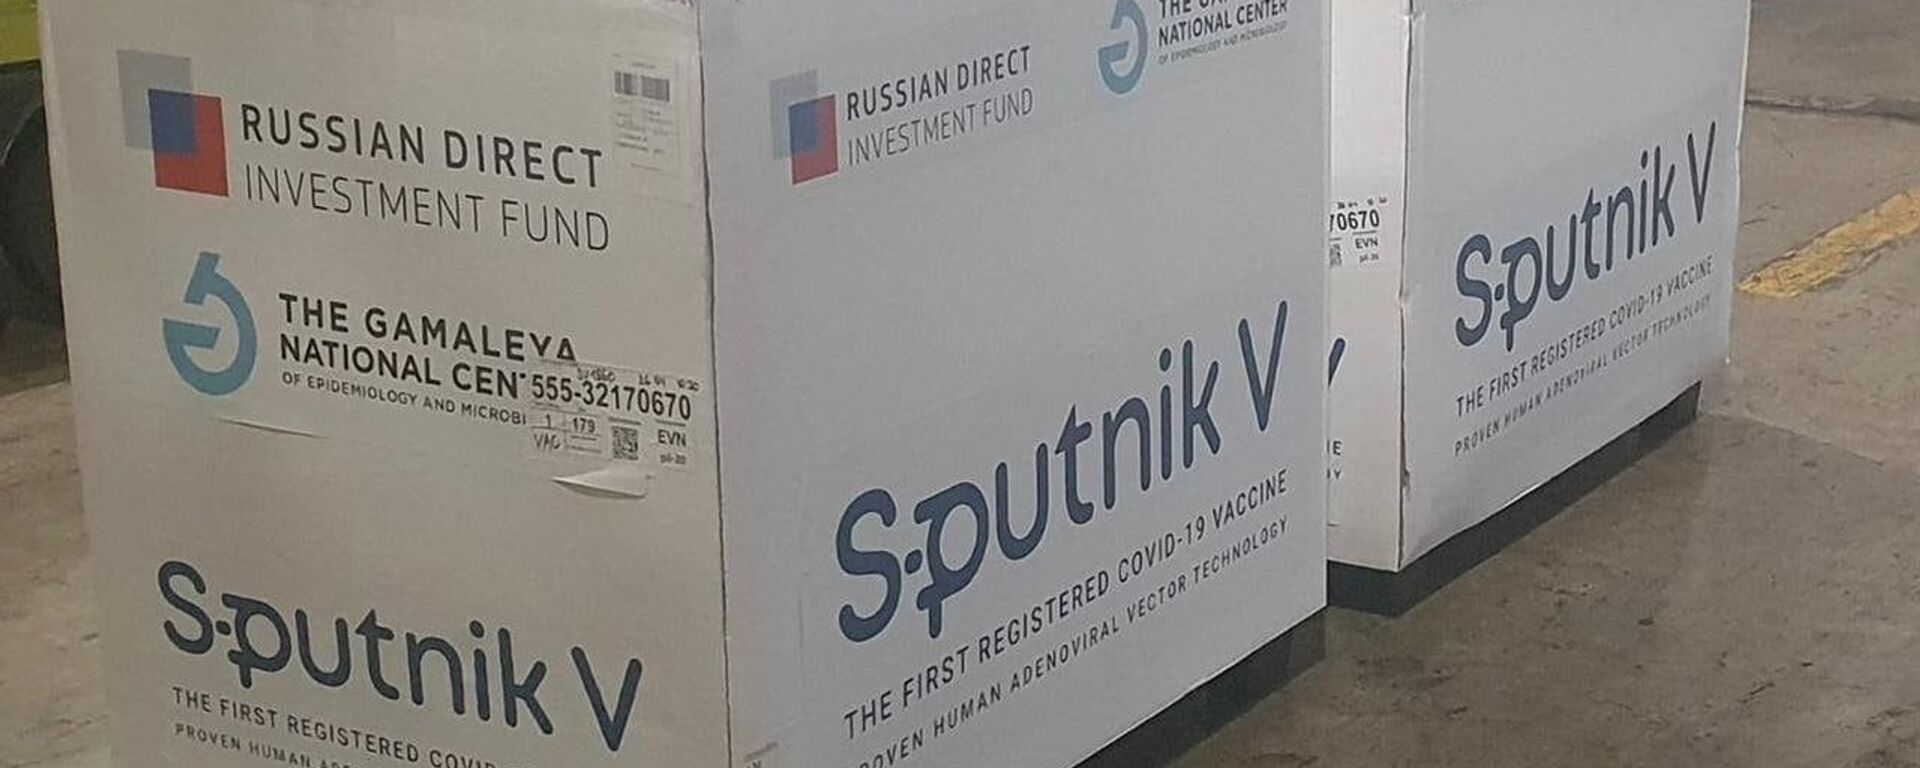 Սպուտնիկ V պատվաստանյութի հերթական խմբաքանակը հասել է Հայաստան - Sputnik Արմենիա, 1920, 03.11.2021